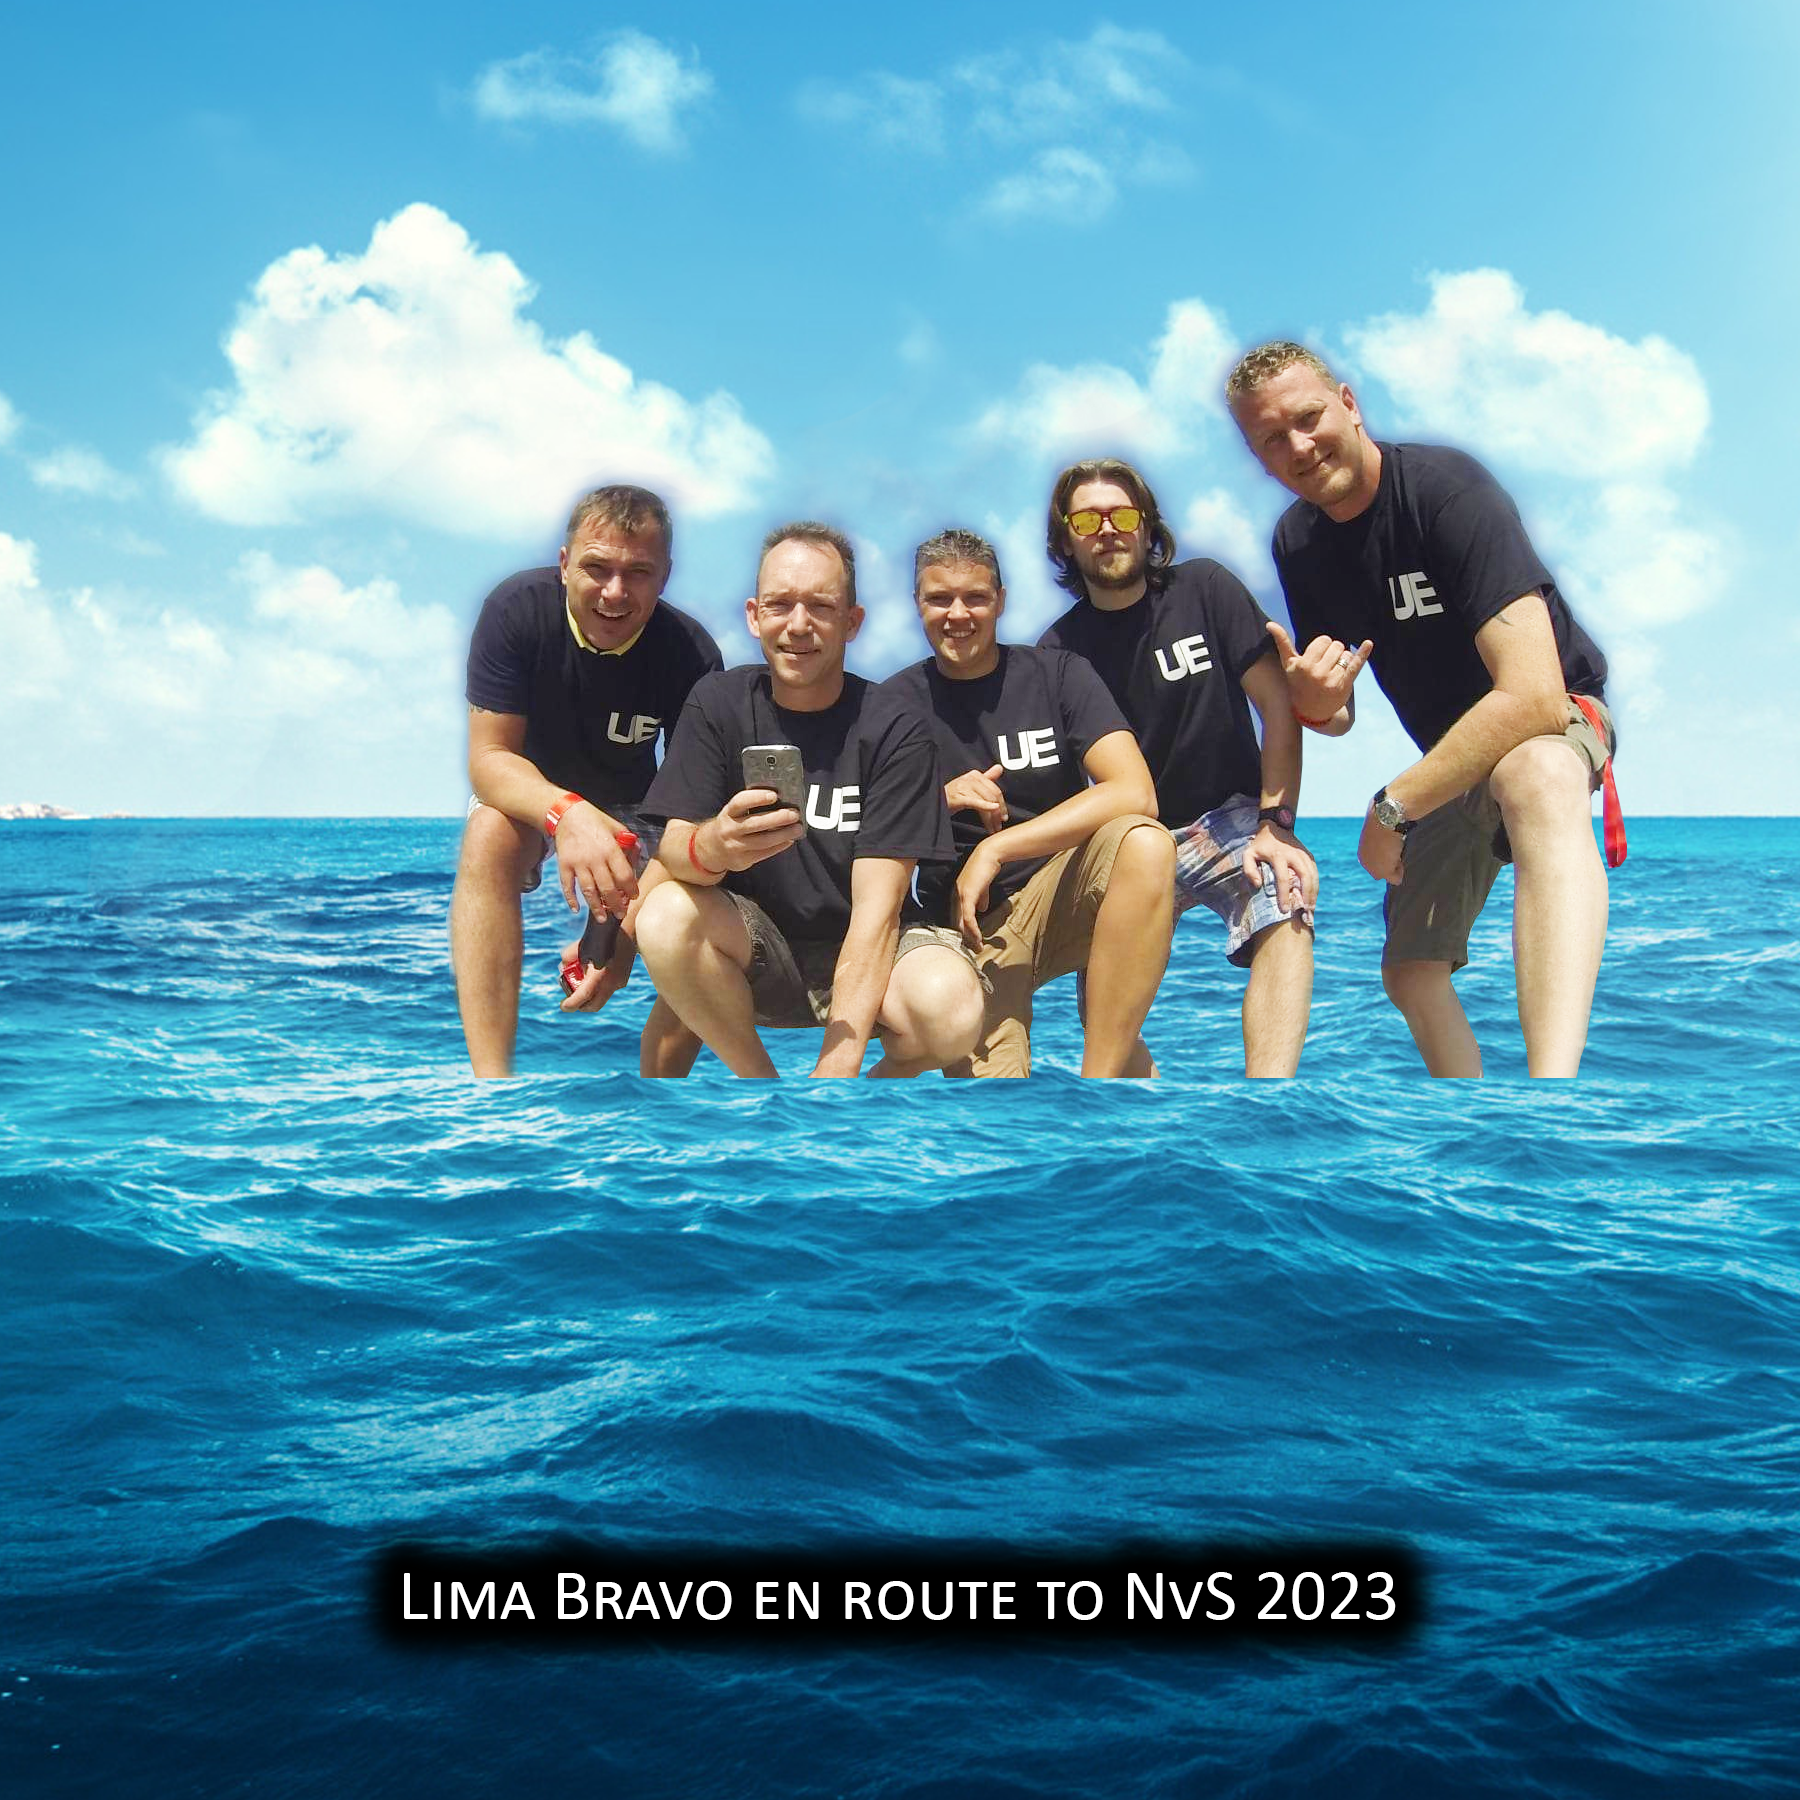 Lima Bravo on their way to NvS 2003